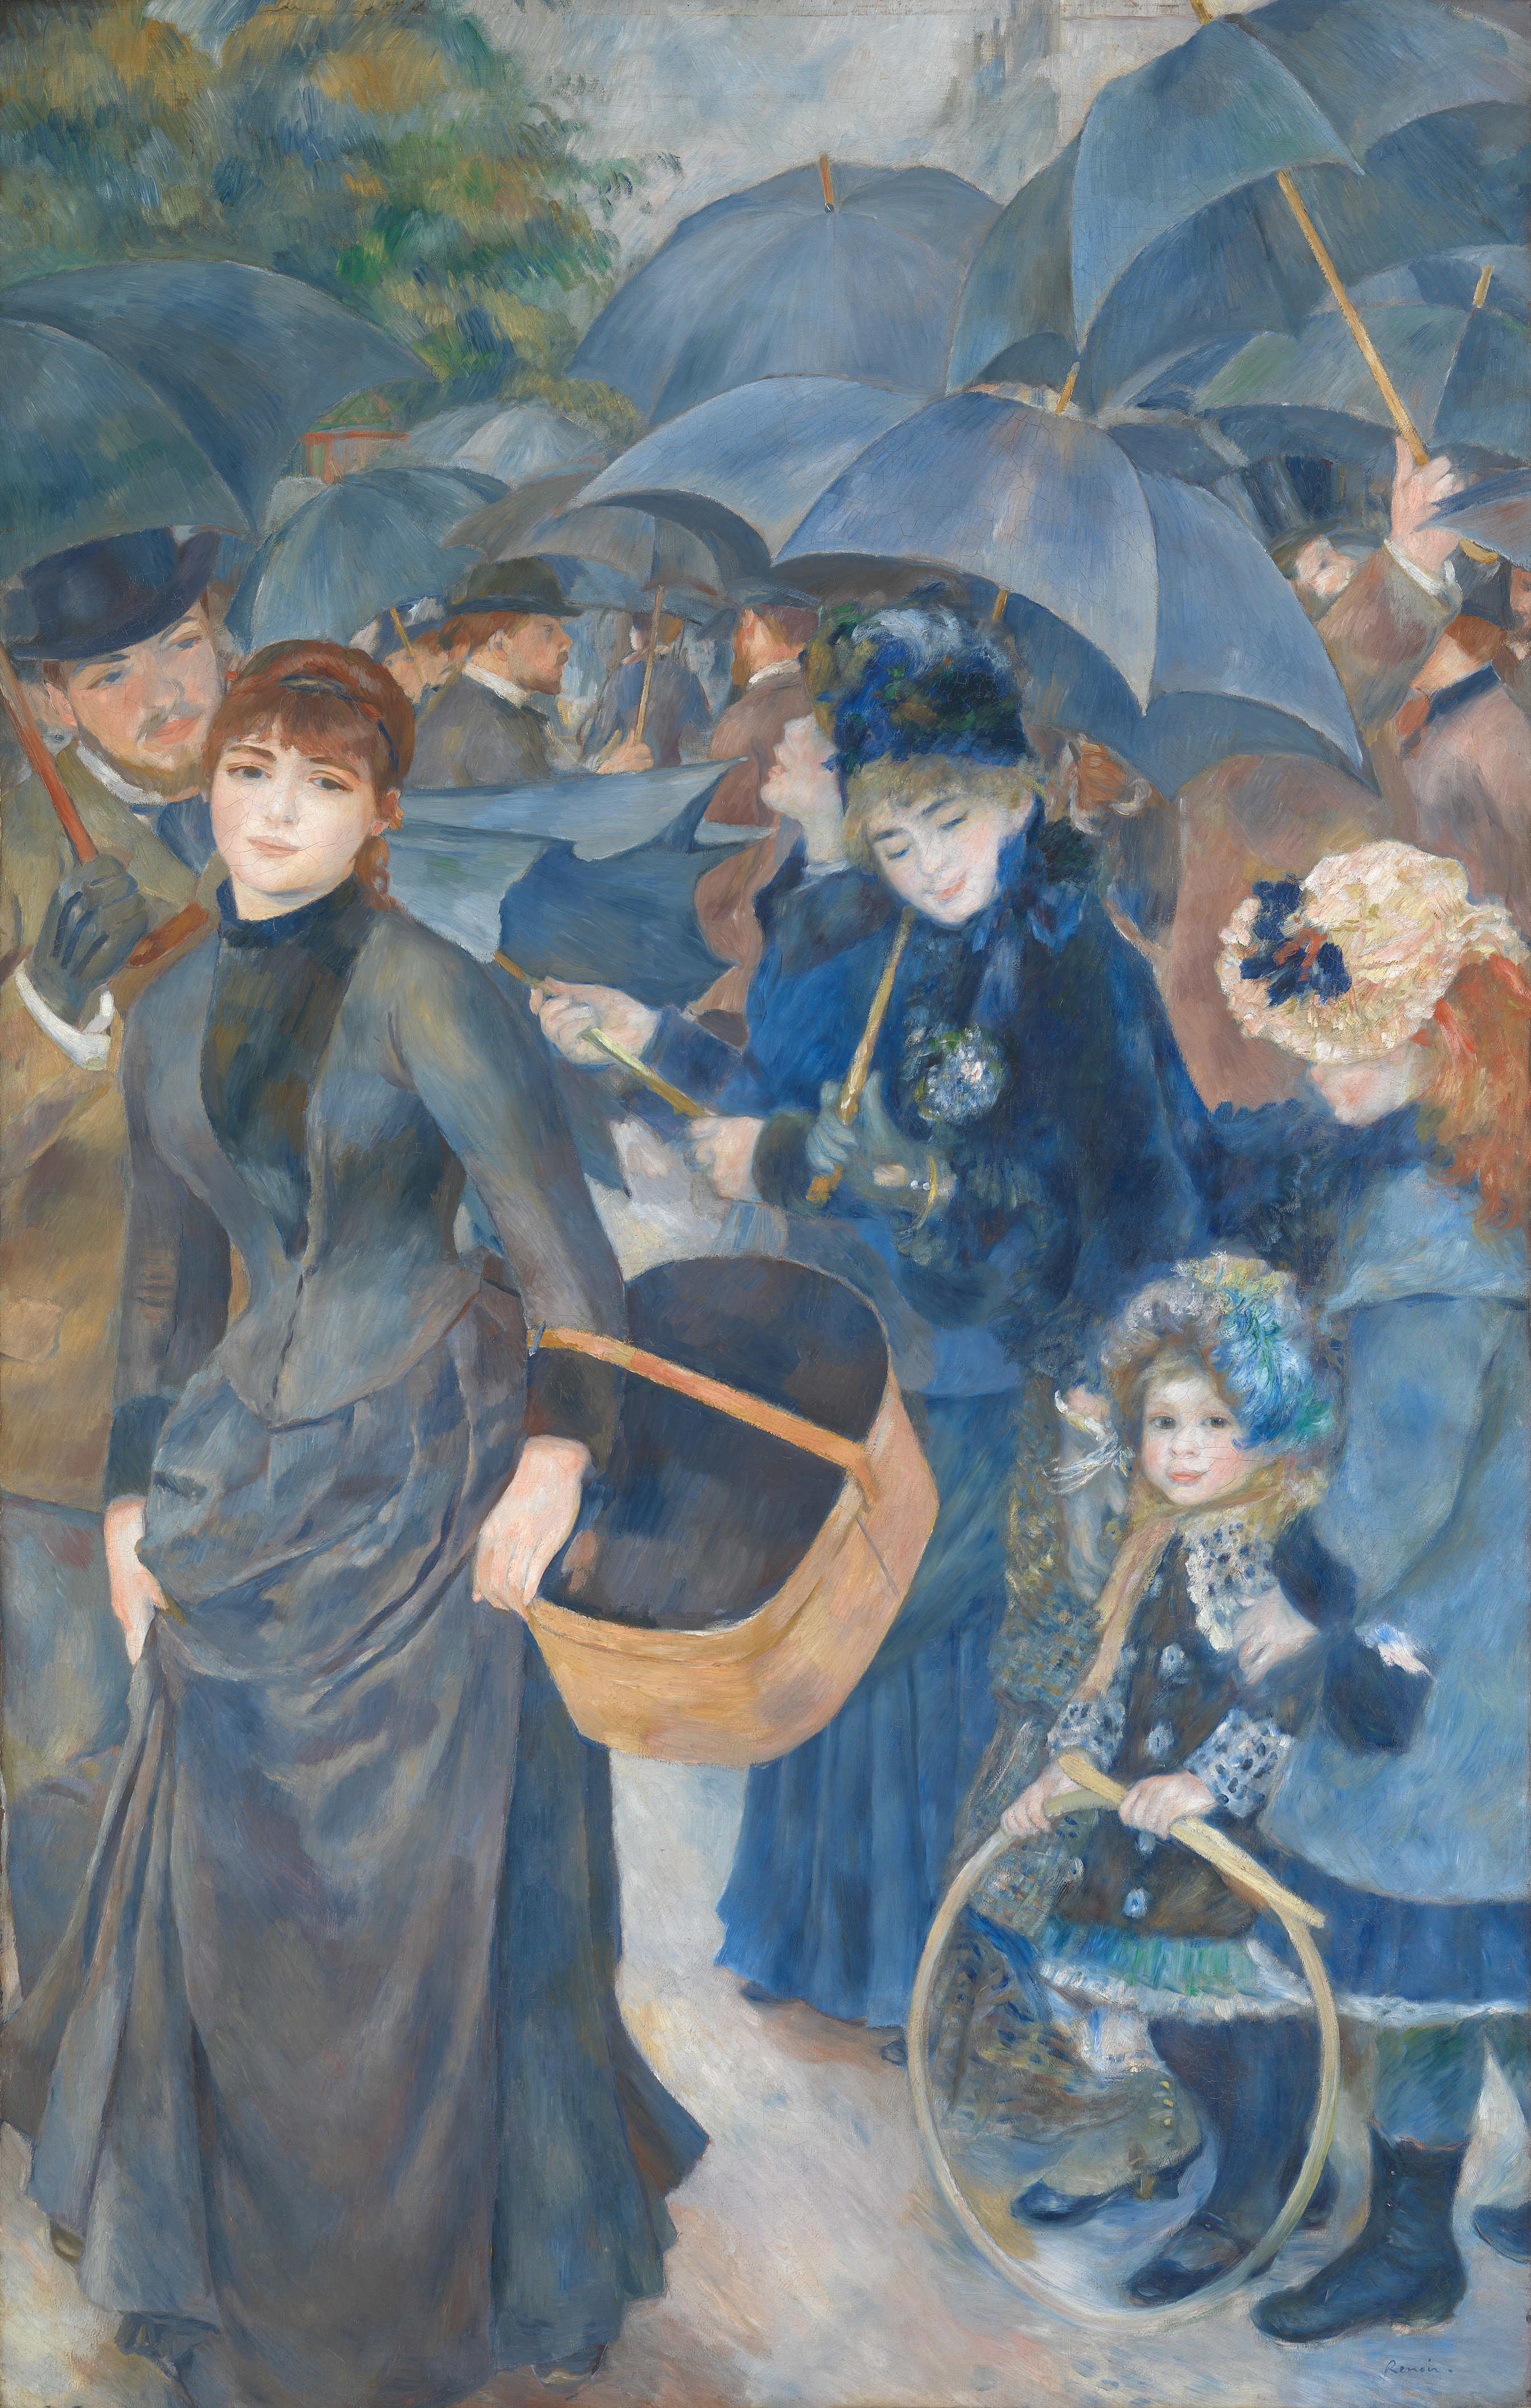 Die Regenschirme by Pierre-Auguste Renoir - 1883 - 180 × 115 cm National Gallery